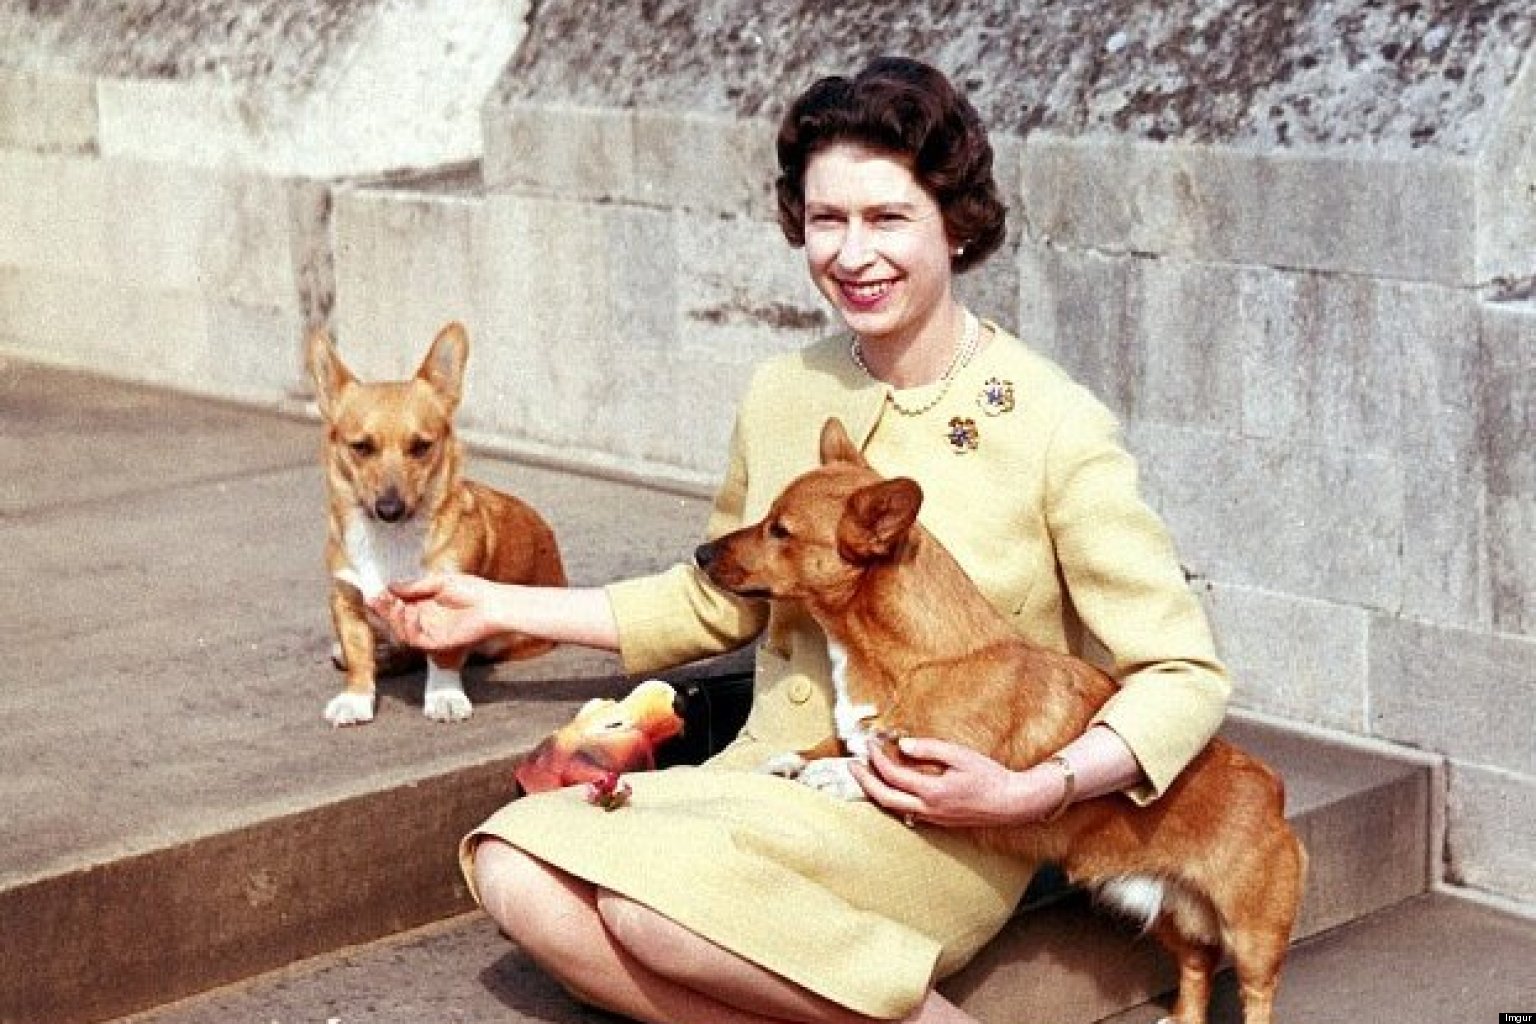 Risultato immagini per queen elisabet e i suoi cani"